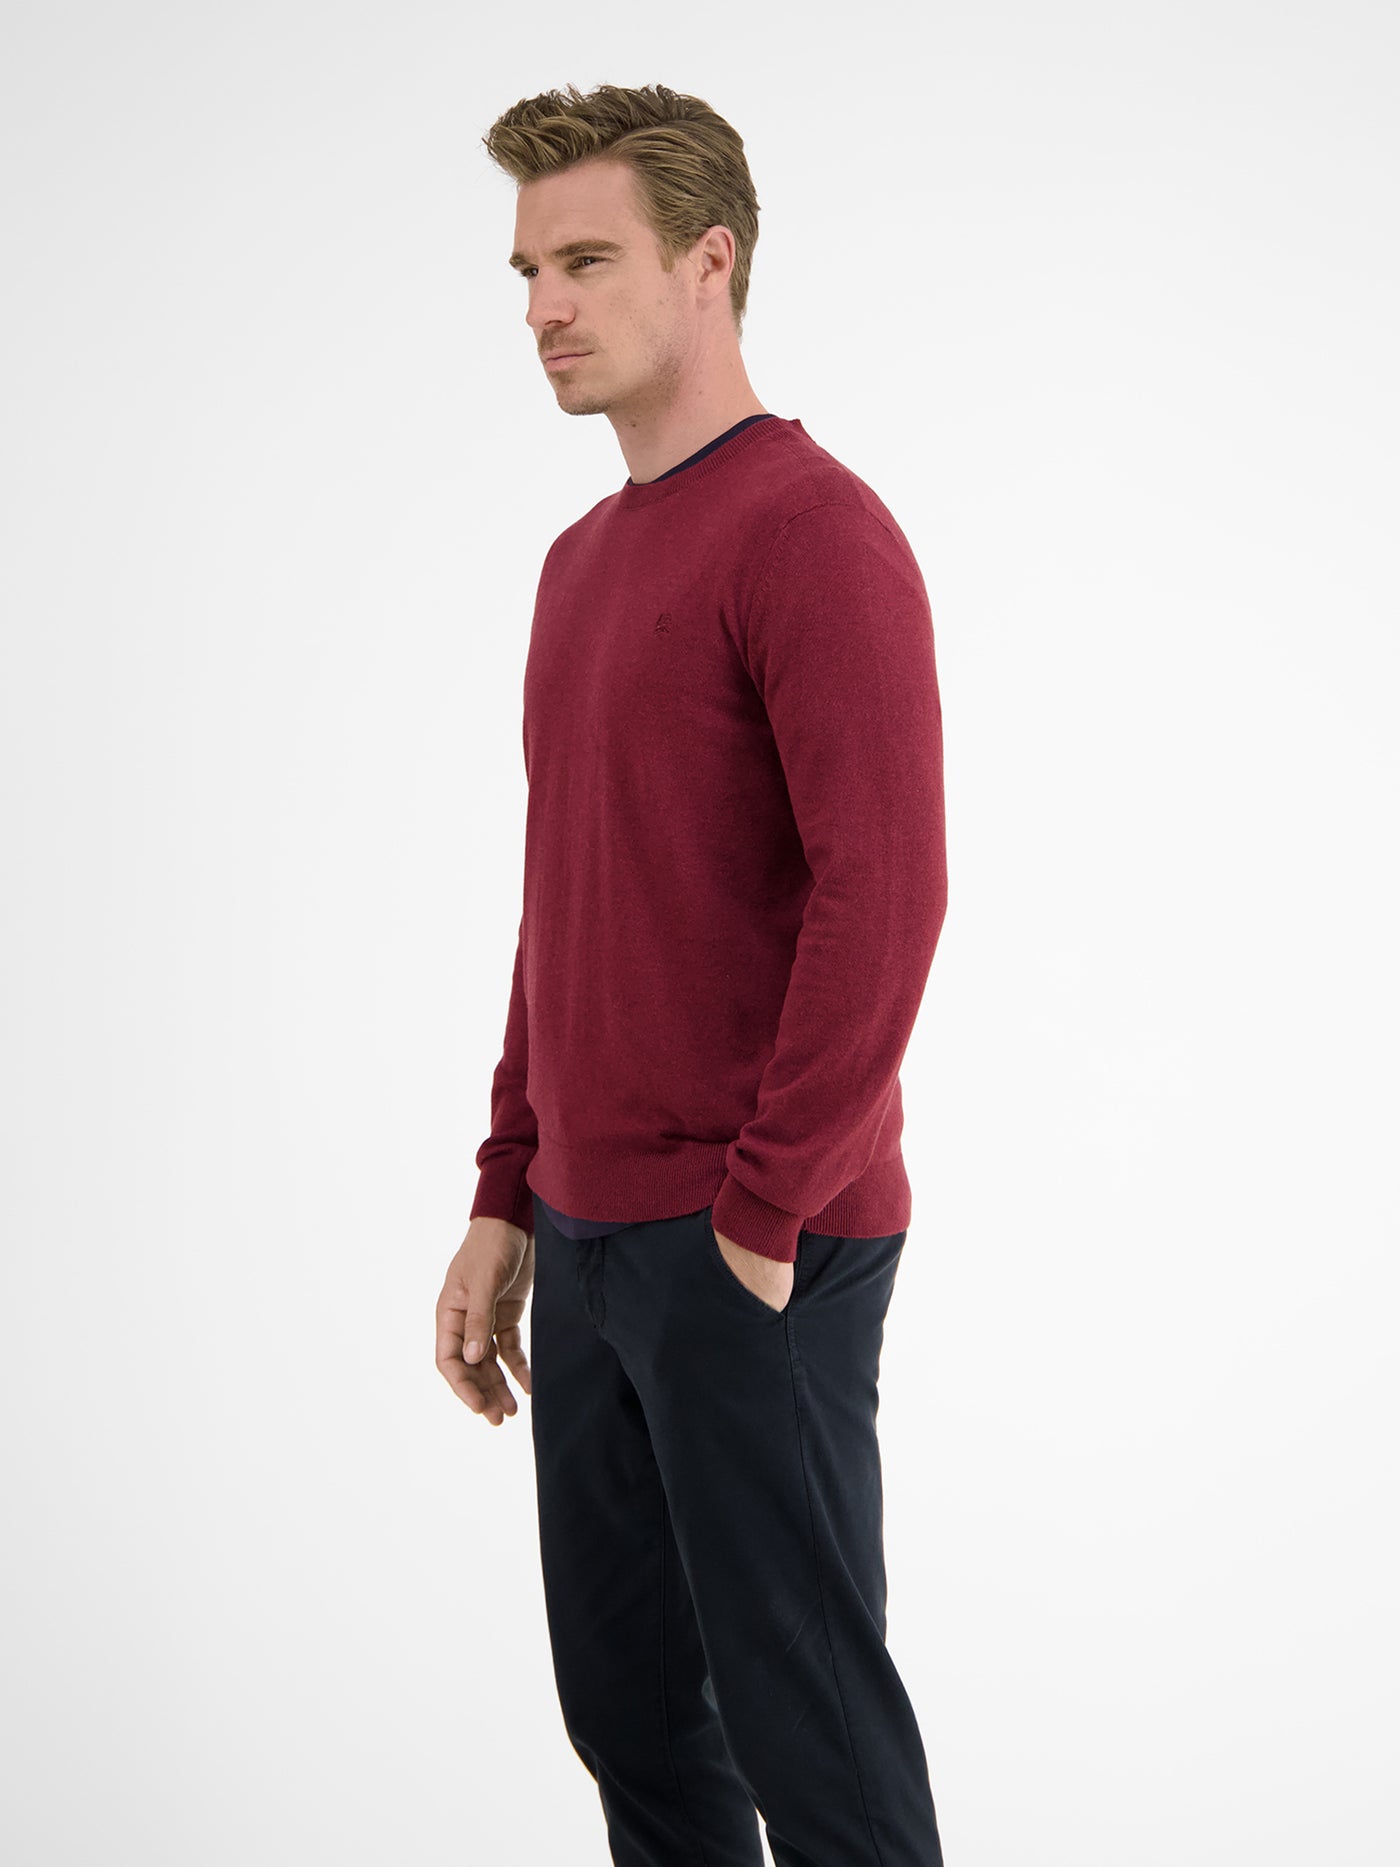 Casual flat knit jumper